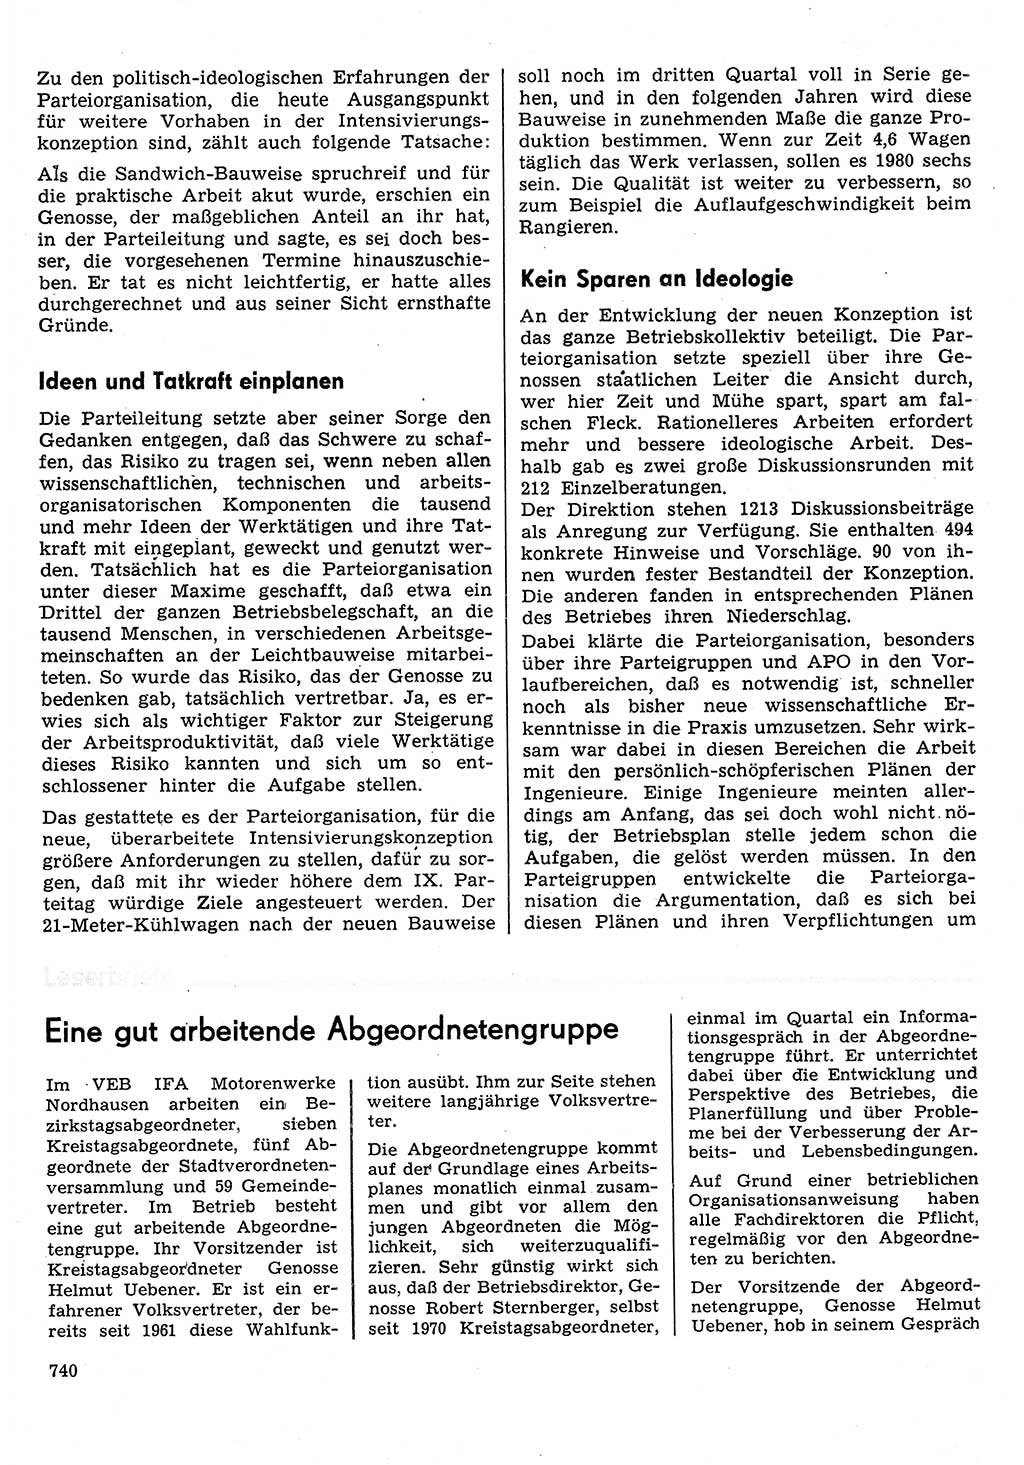 Neuer Weg (NW), Organ des Zentralkomitees (ZK) der SED (Sozialistische Einheitspartei Deutschlands) für Fragen des Parteilebens, 30. Jahrgang [Deutsche Demokratische Republik (DDR)] 1975, Seite 740 (NW ZK SED DDR 1975, S. 740)